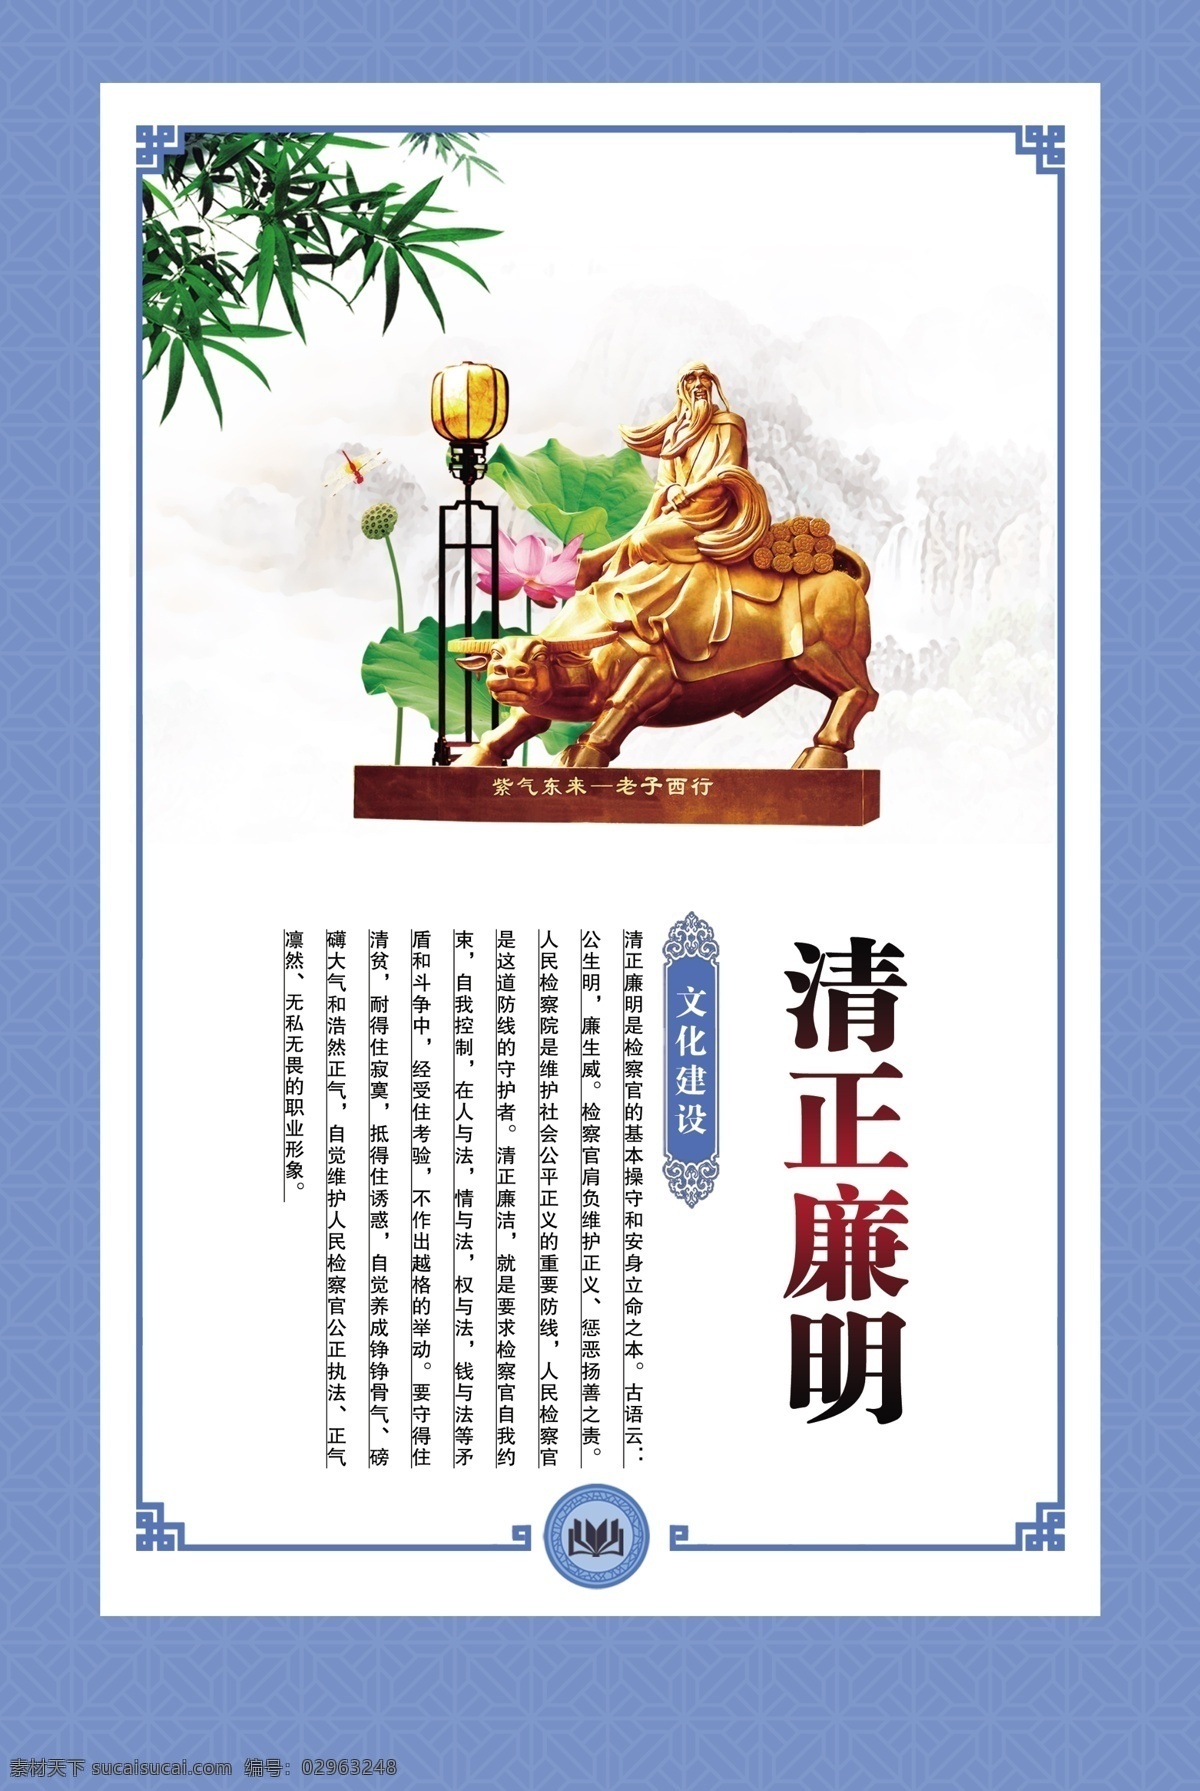 清正廉洁 企业文化 蓝色背景 中国风图版 法治 法律 竹子